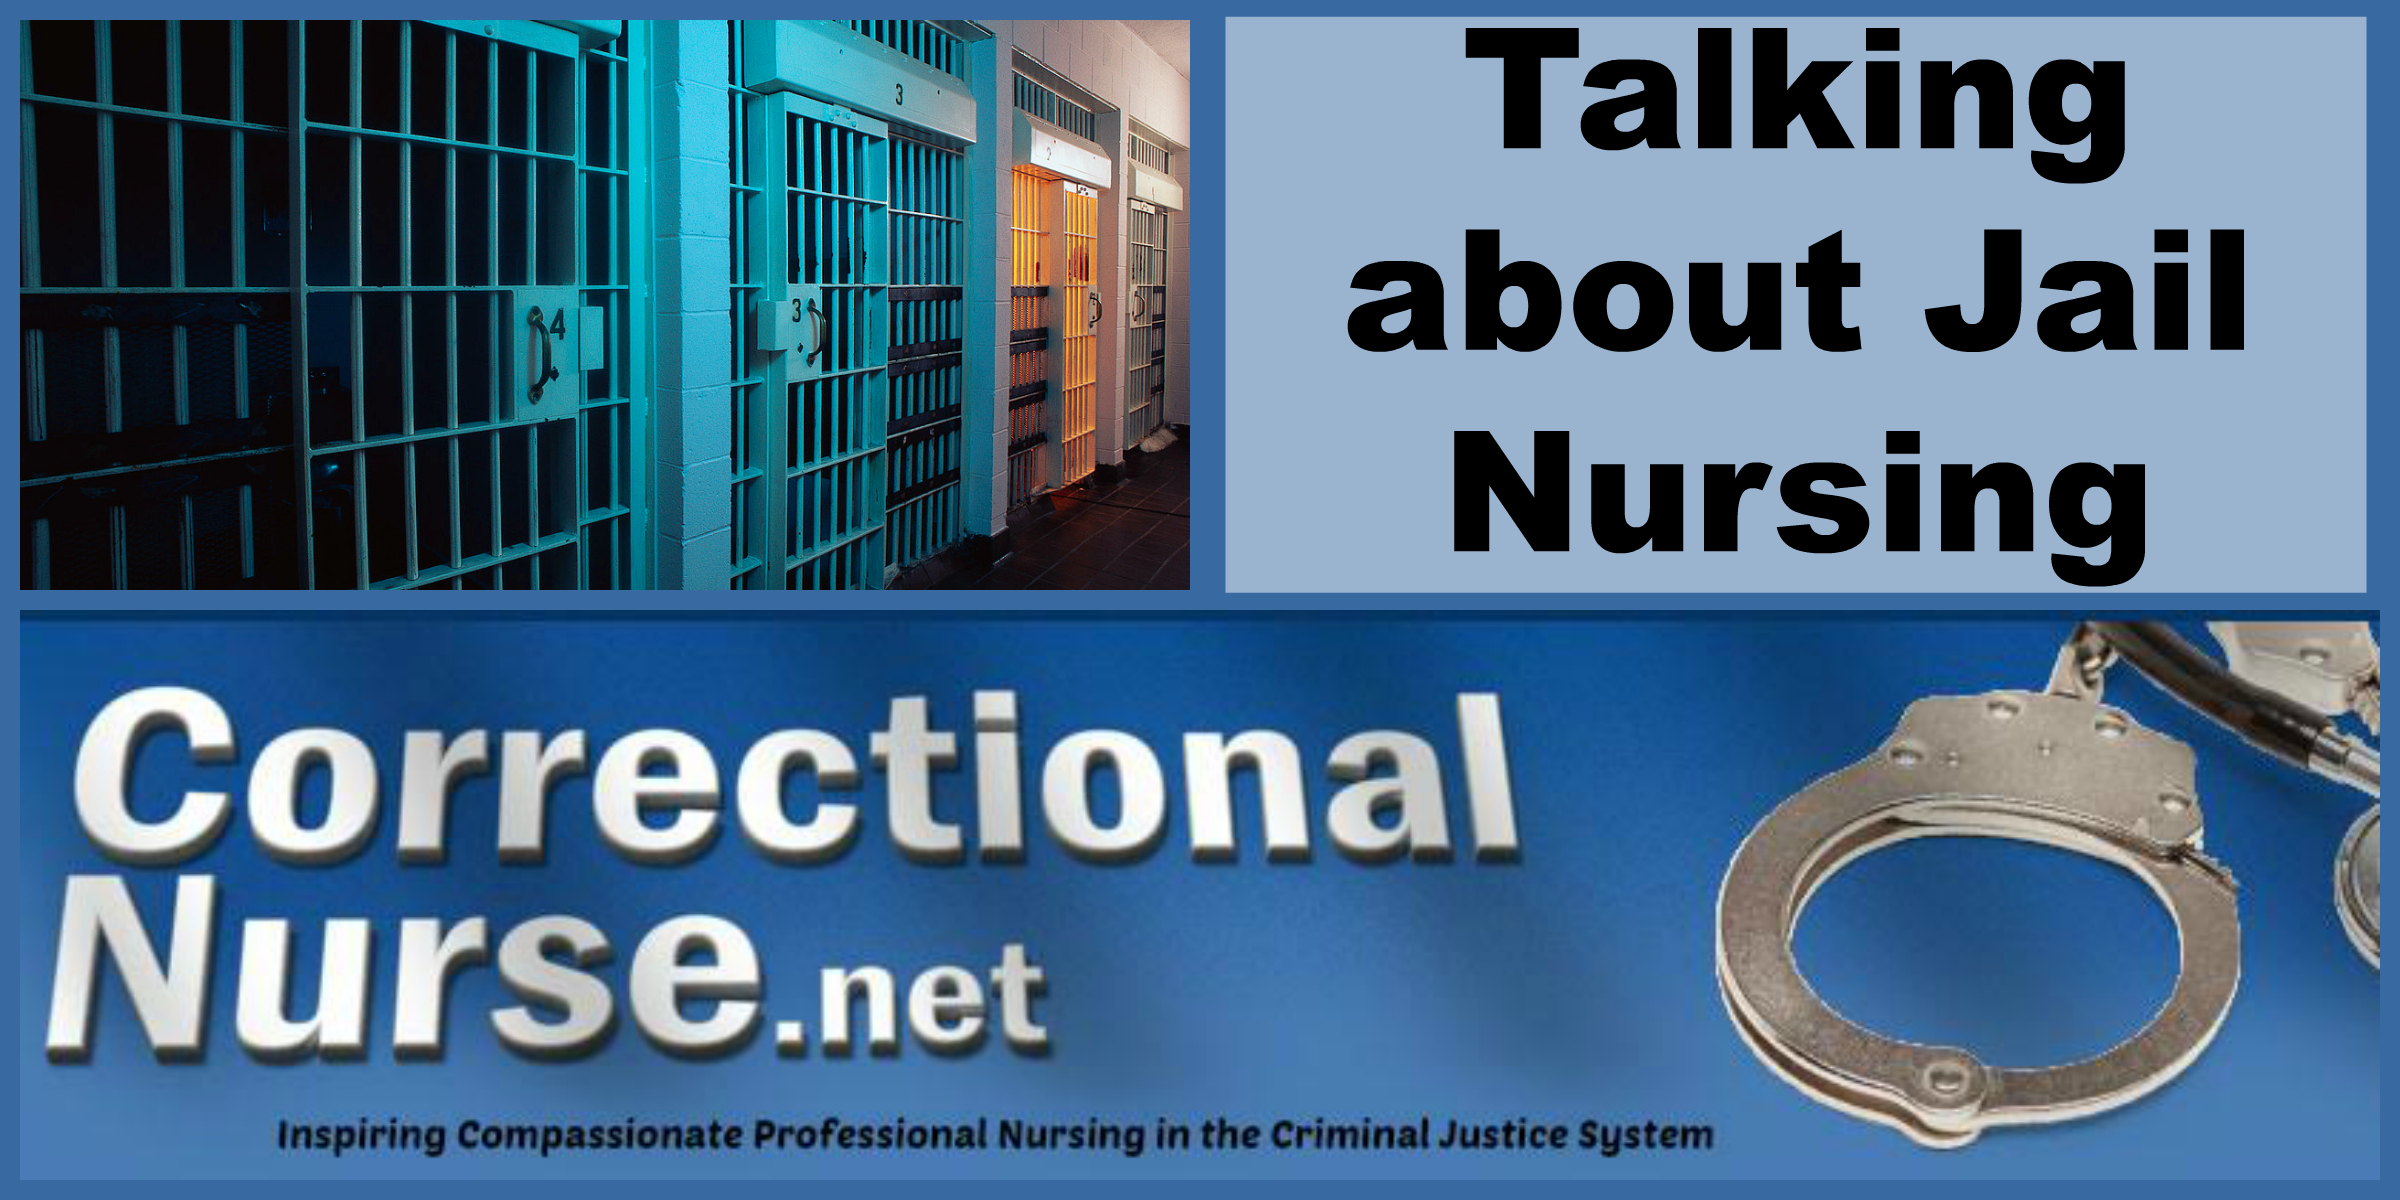 Talking about Jail Nursing